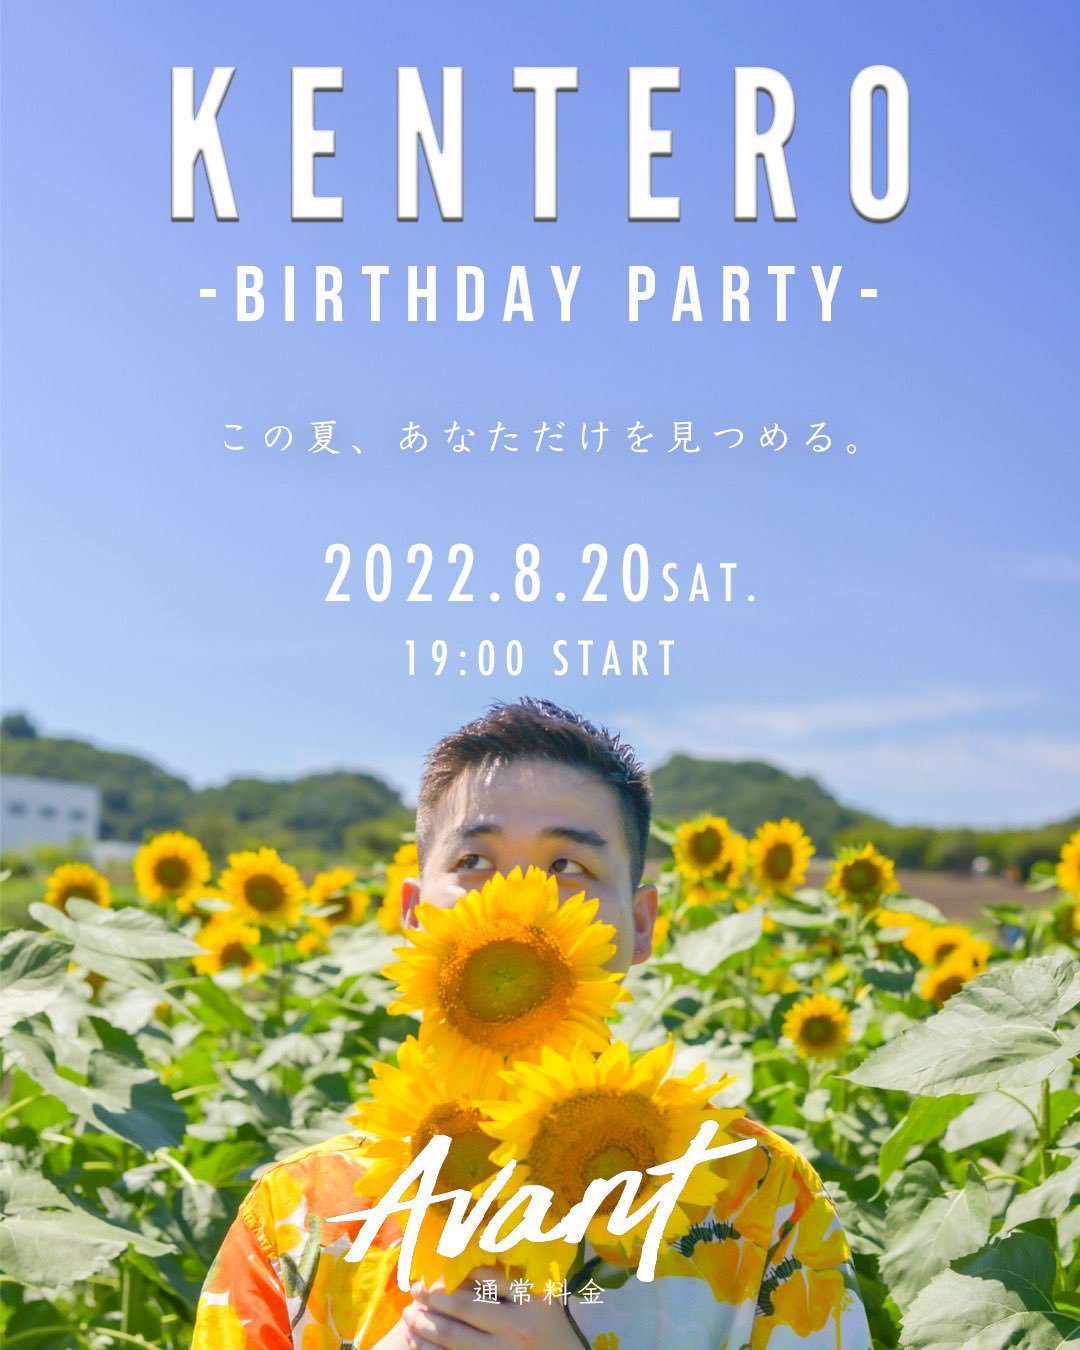 KENTERO Birthday Party